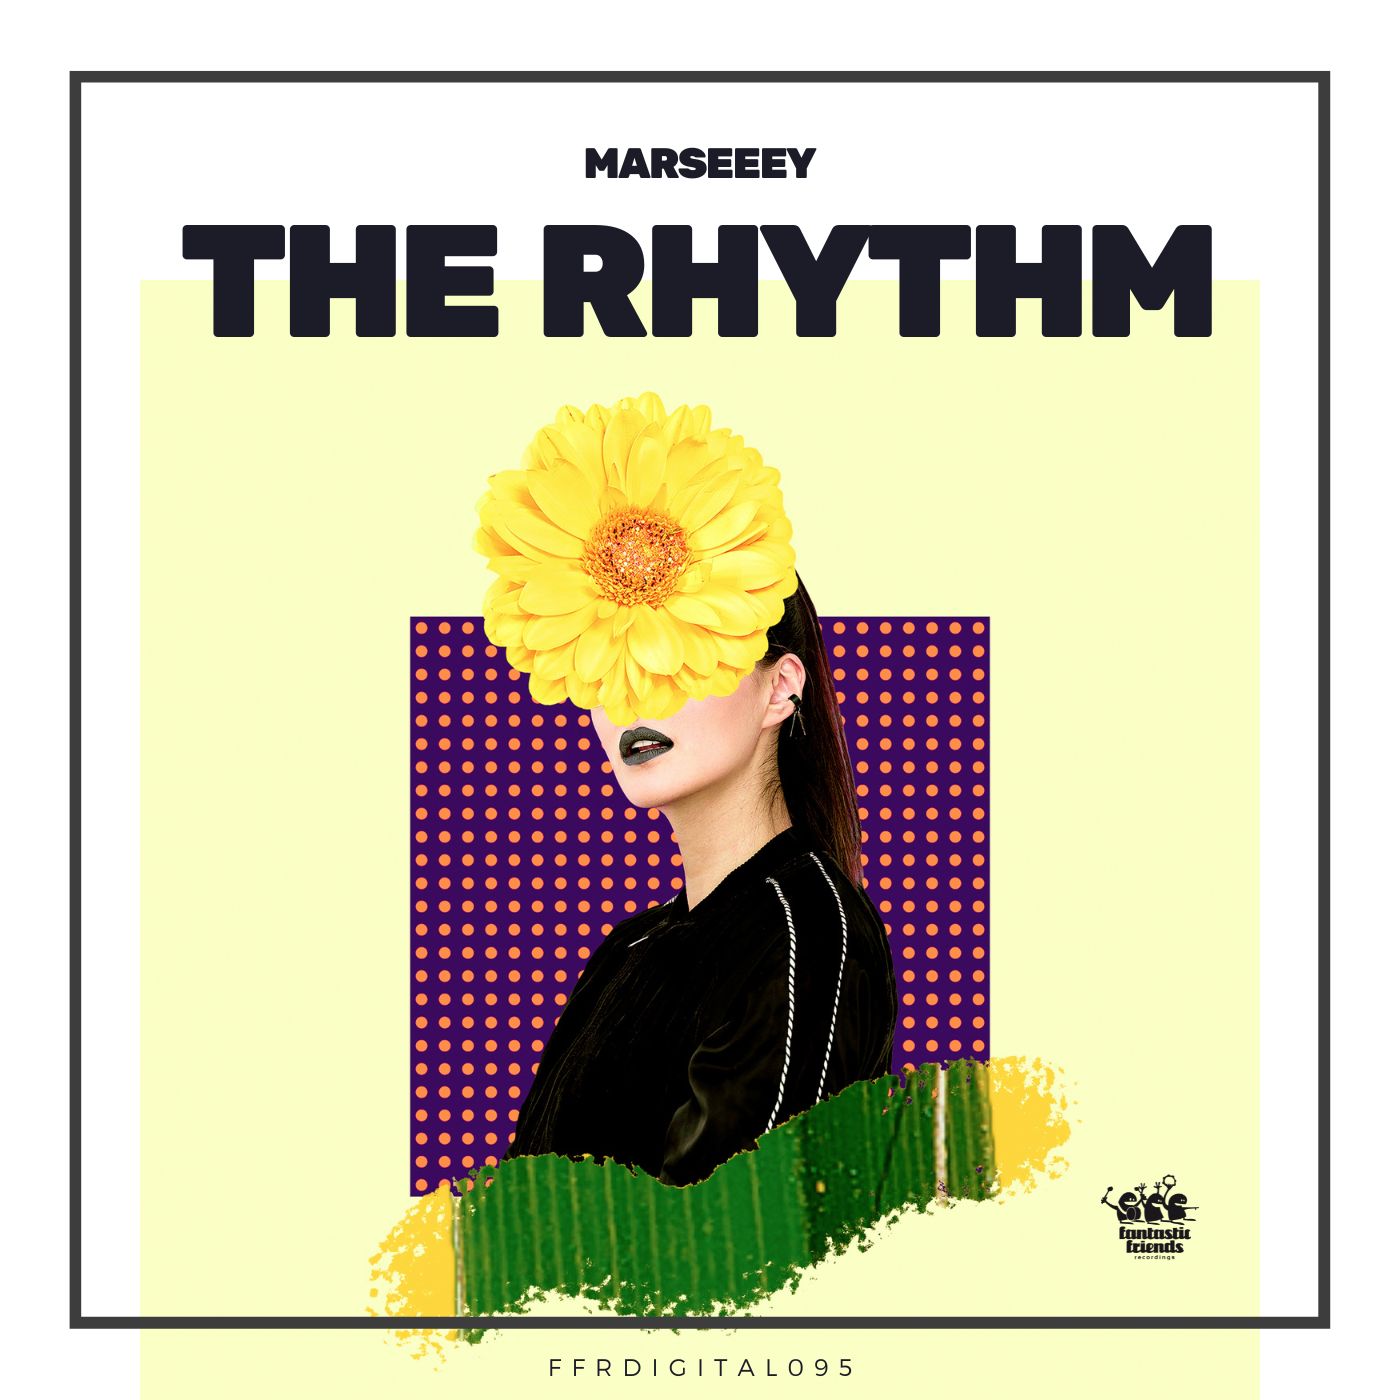 Marseeey the rhythm